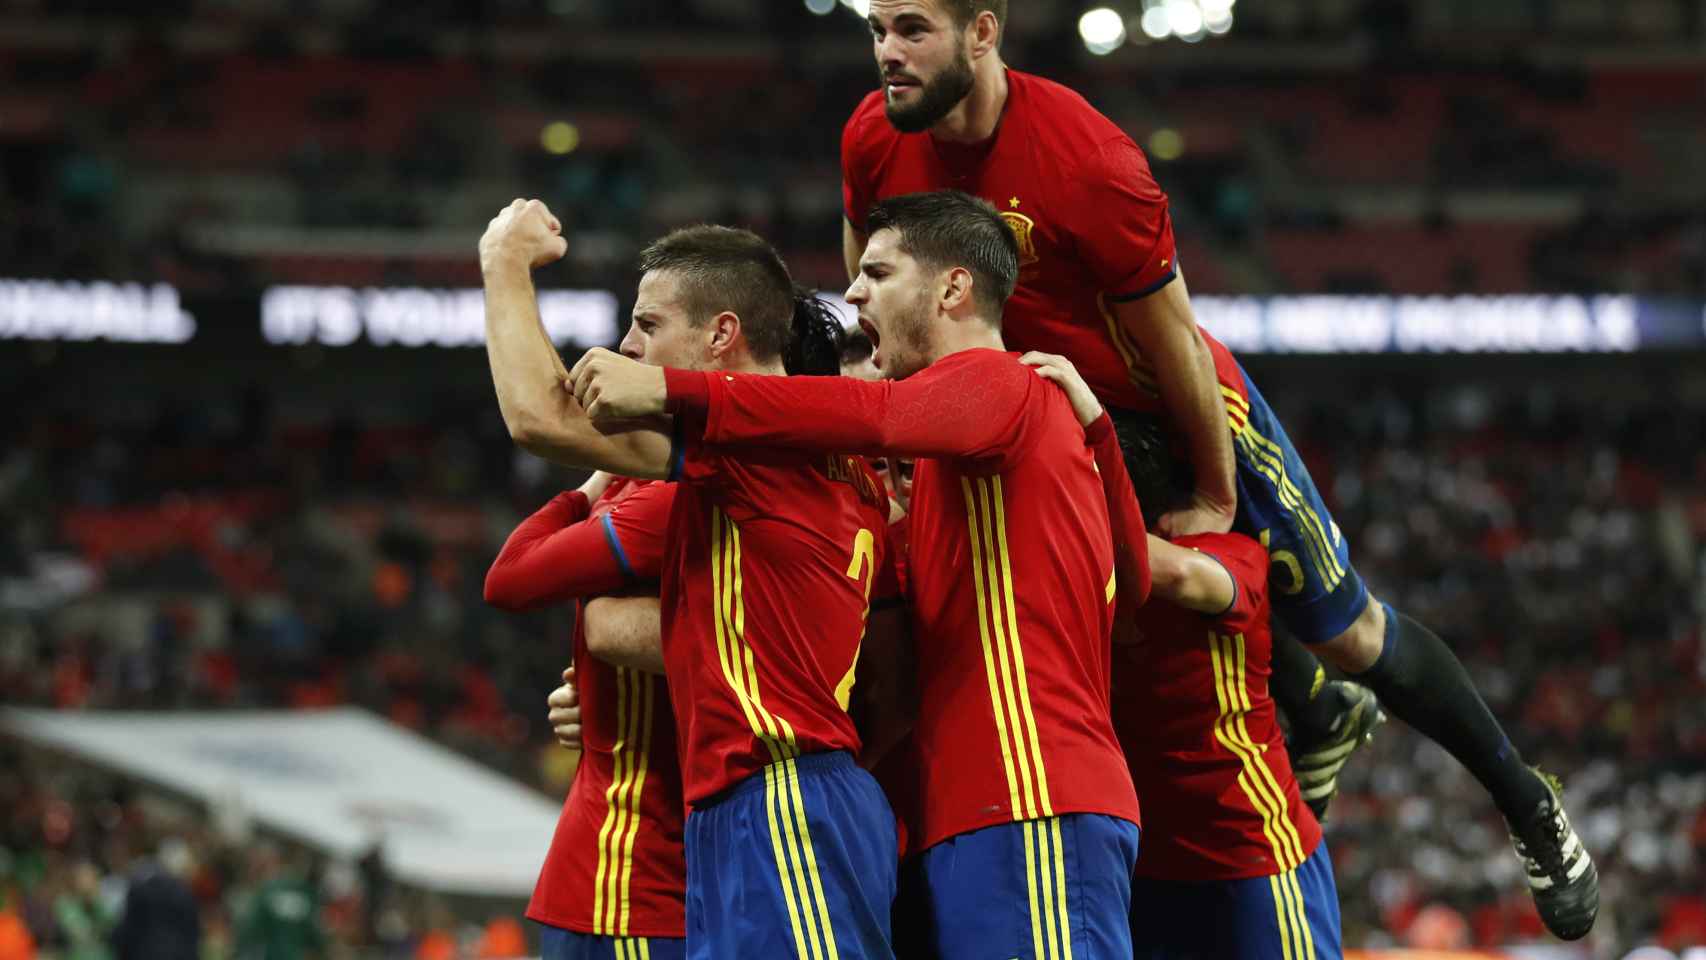 Los jugadores de España celebran un gol.